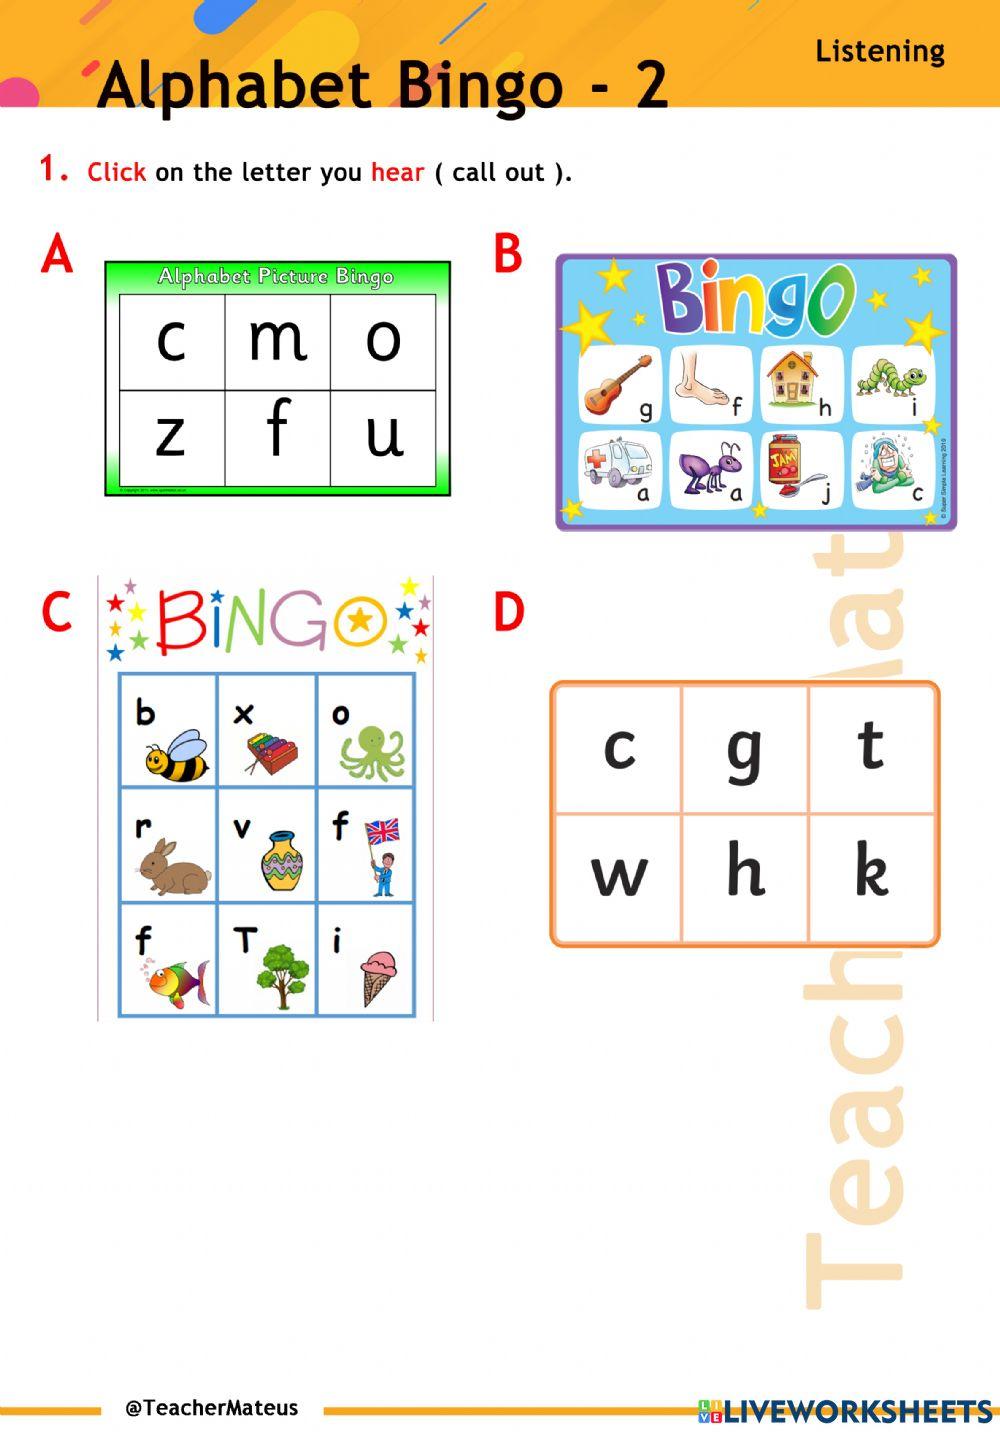 Alphabet Bingo - 2